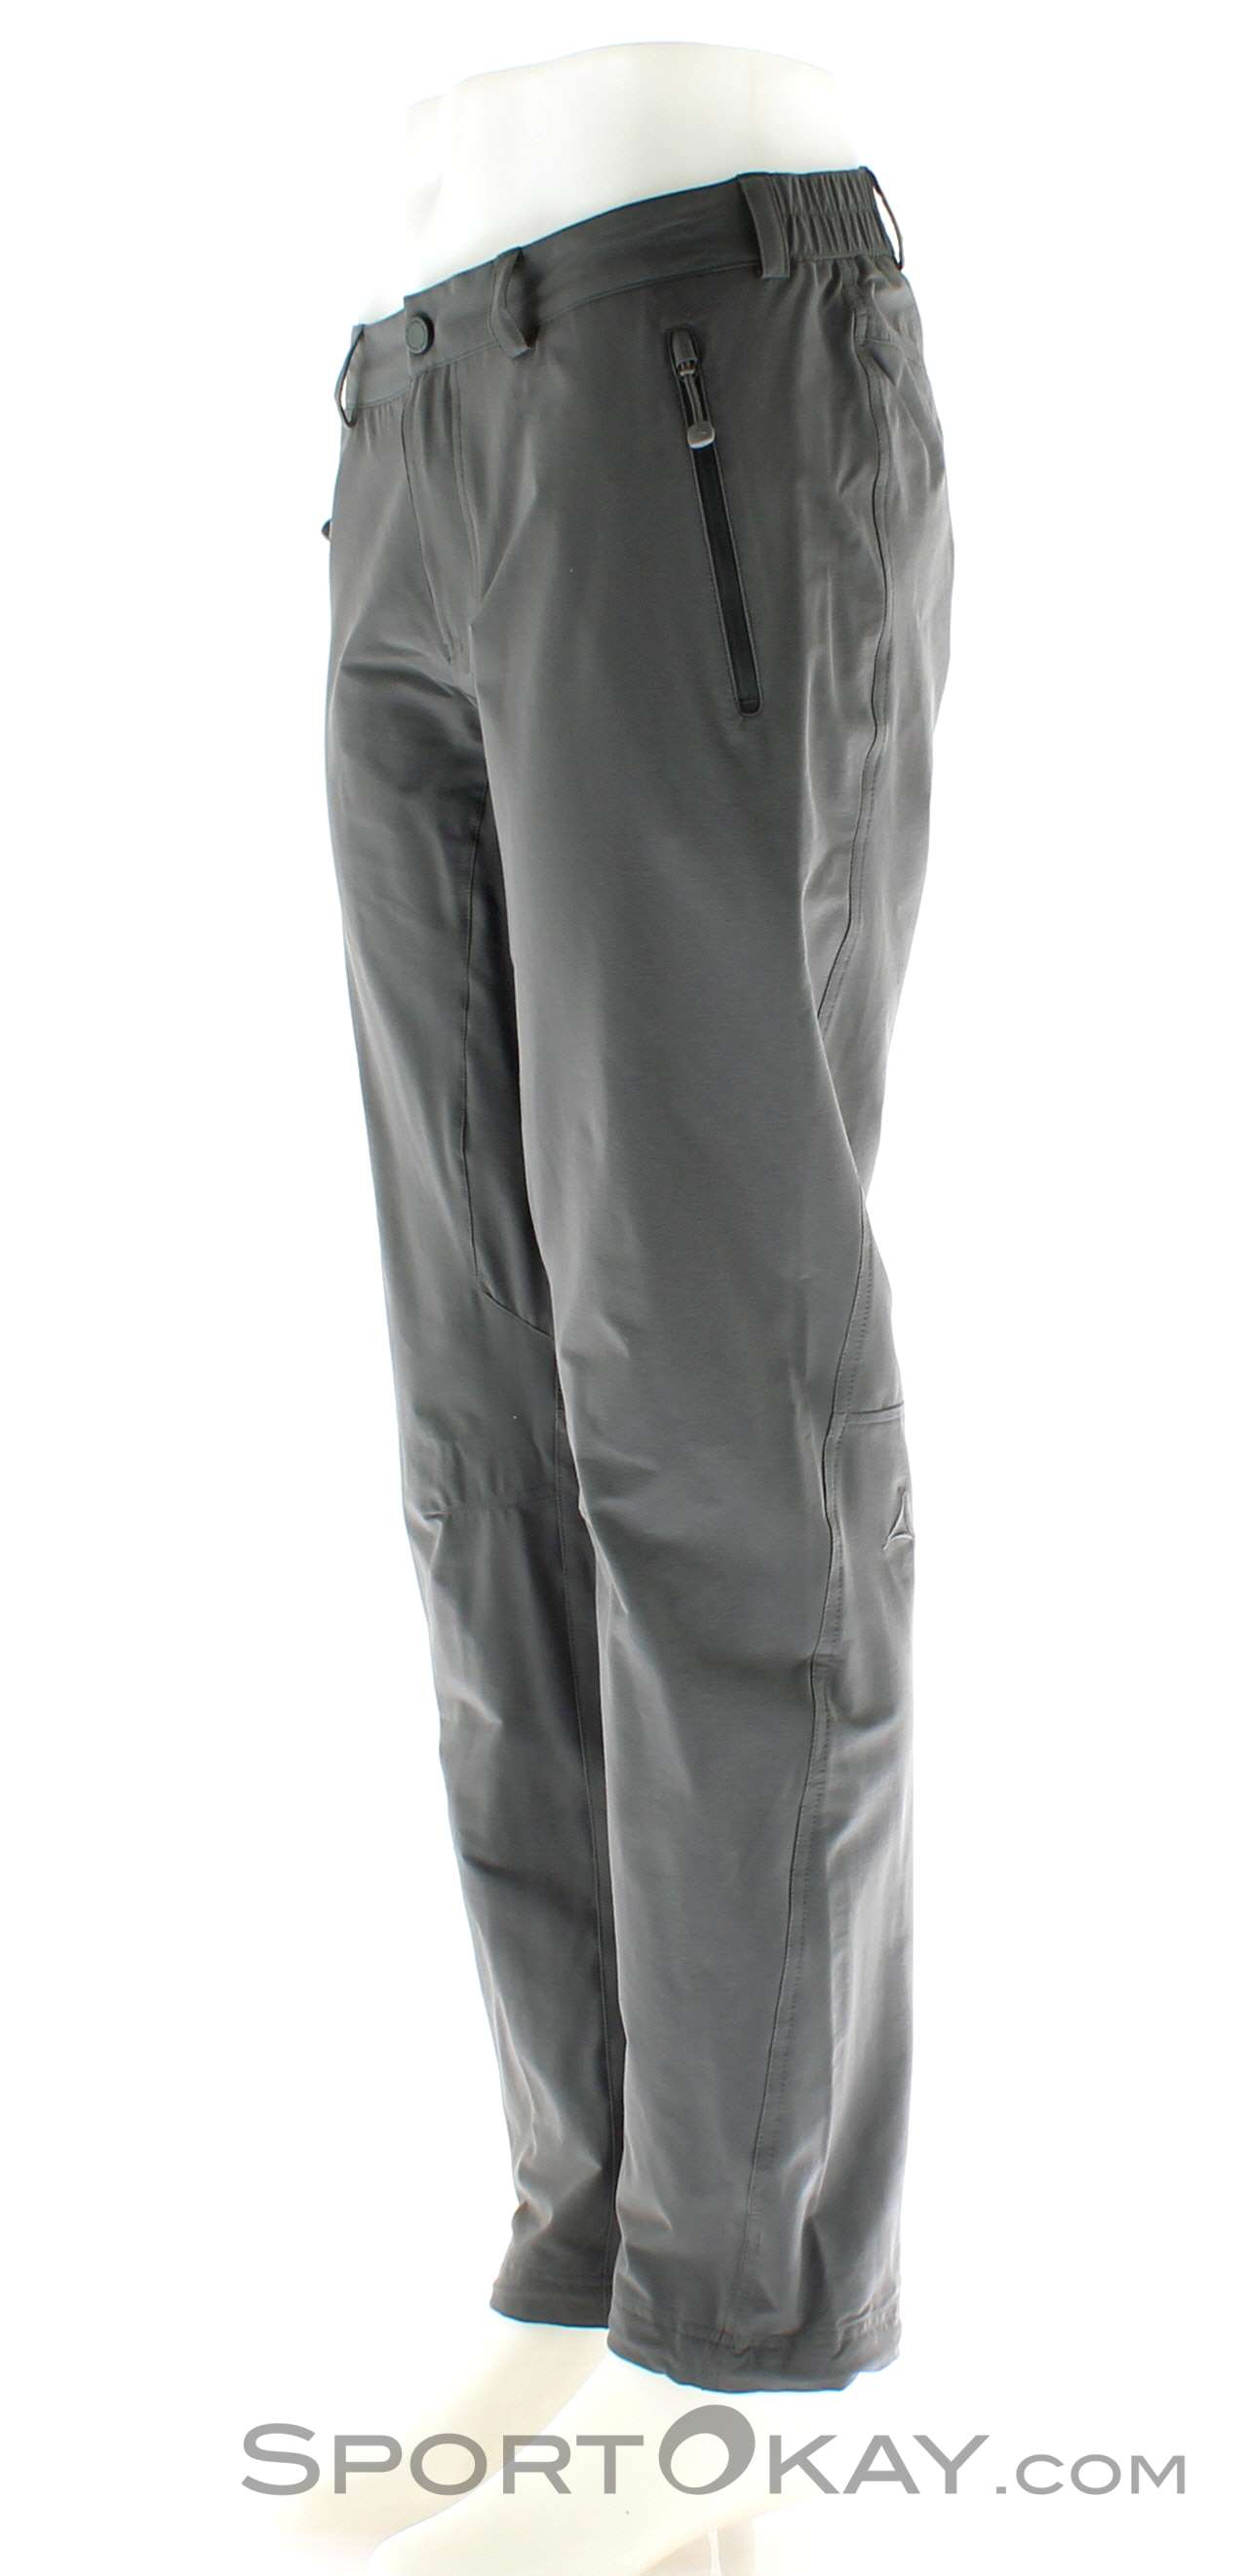 Schöffel Koper Pants Outdoor All Outdoor Clothing - Mens - Outdoor Pants - Pants 